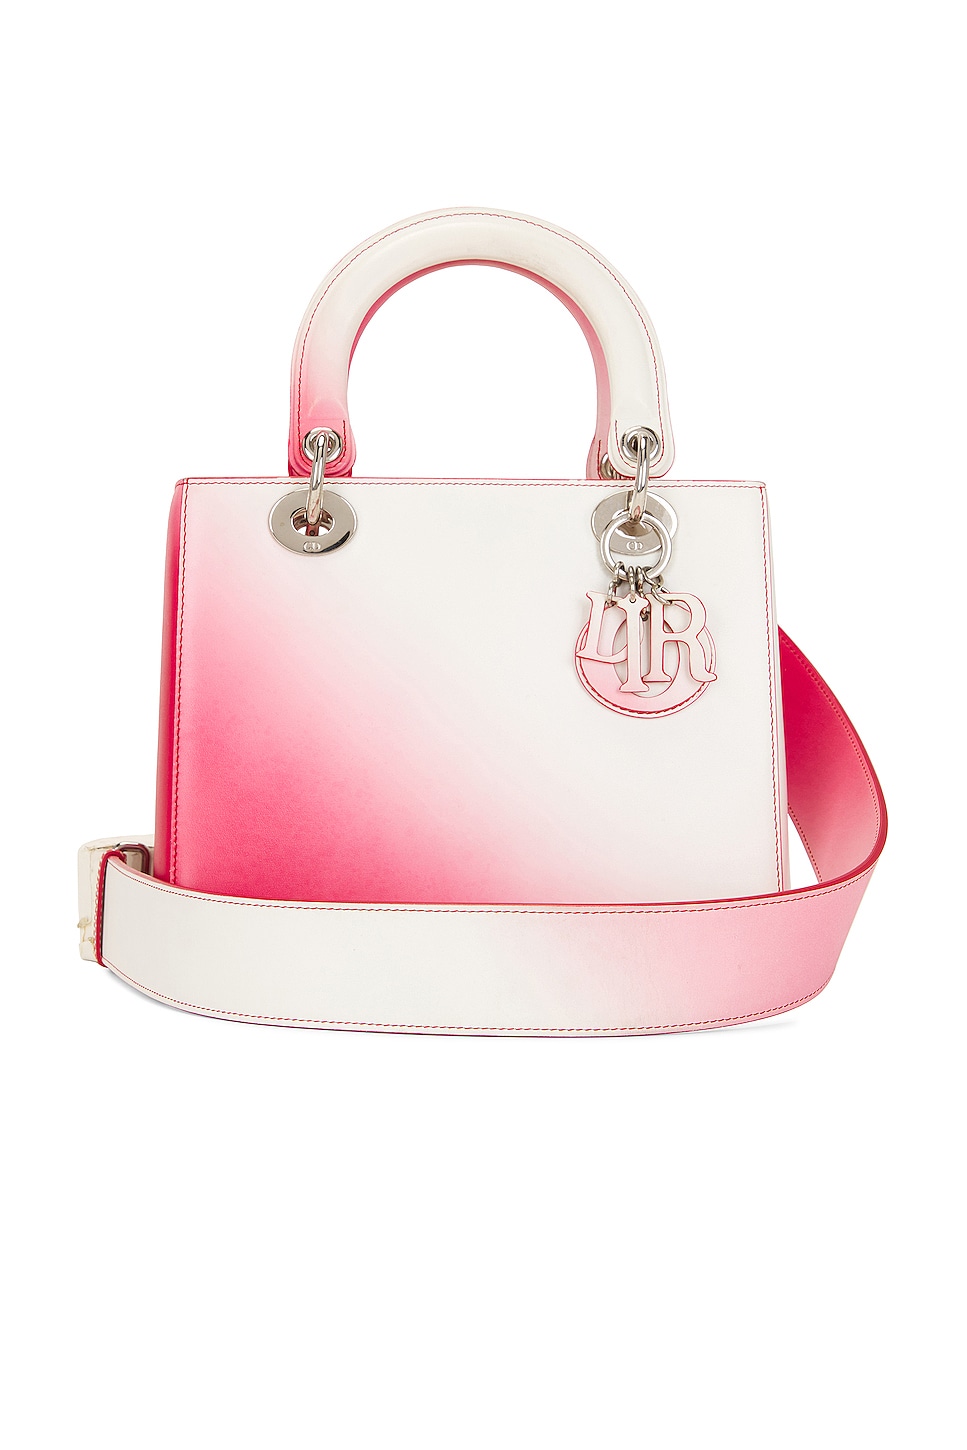 FWRD Renew ESG Luxury Louis Vuitton Cherry Sac Tote Bag in Monogram